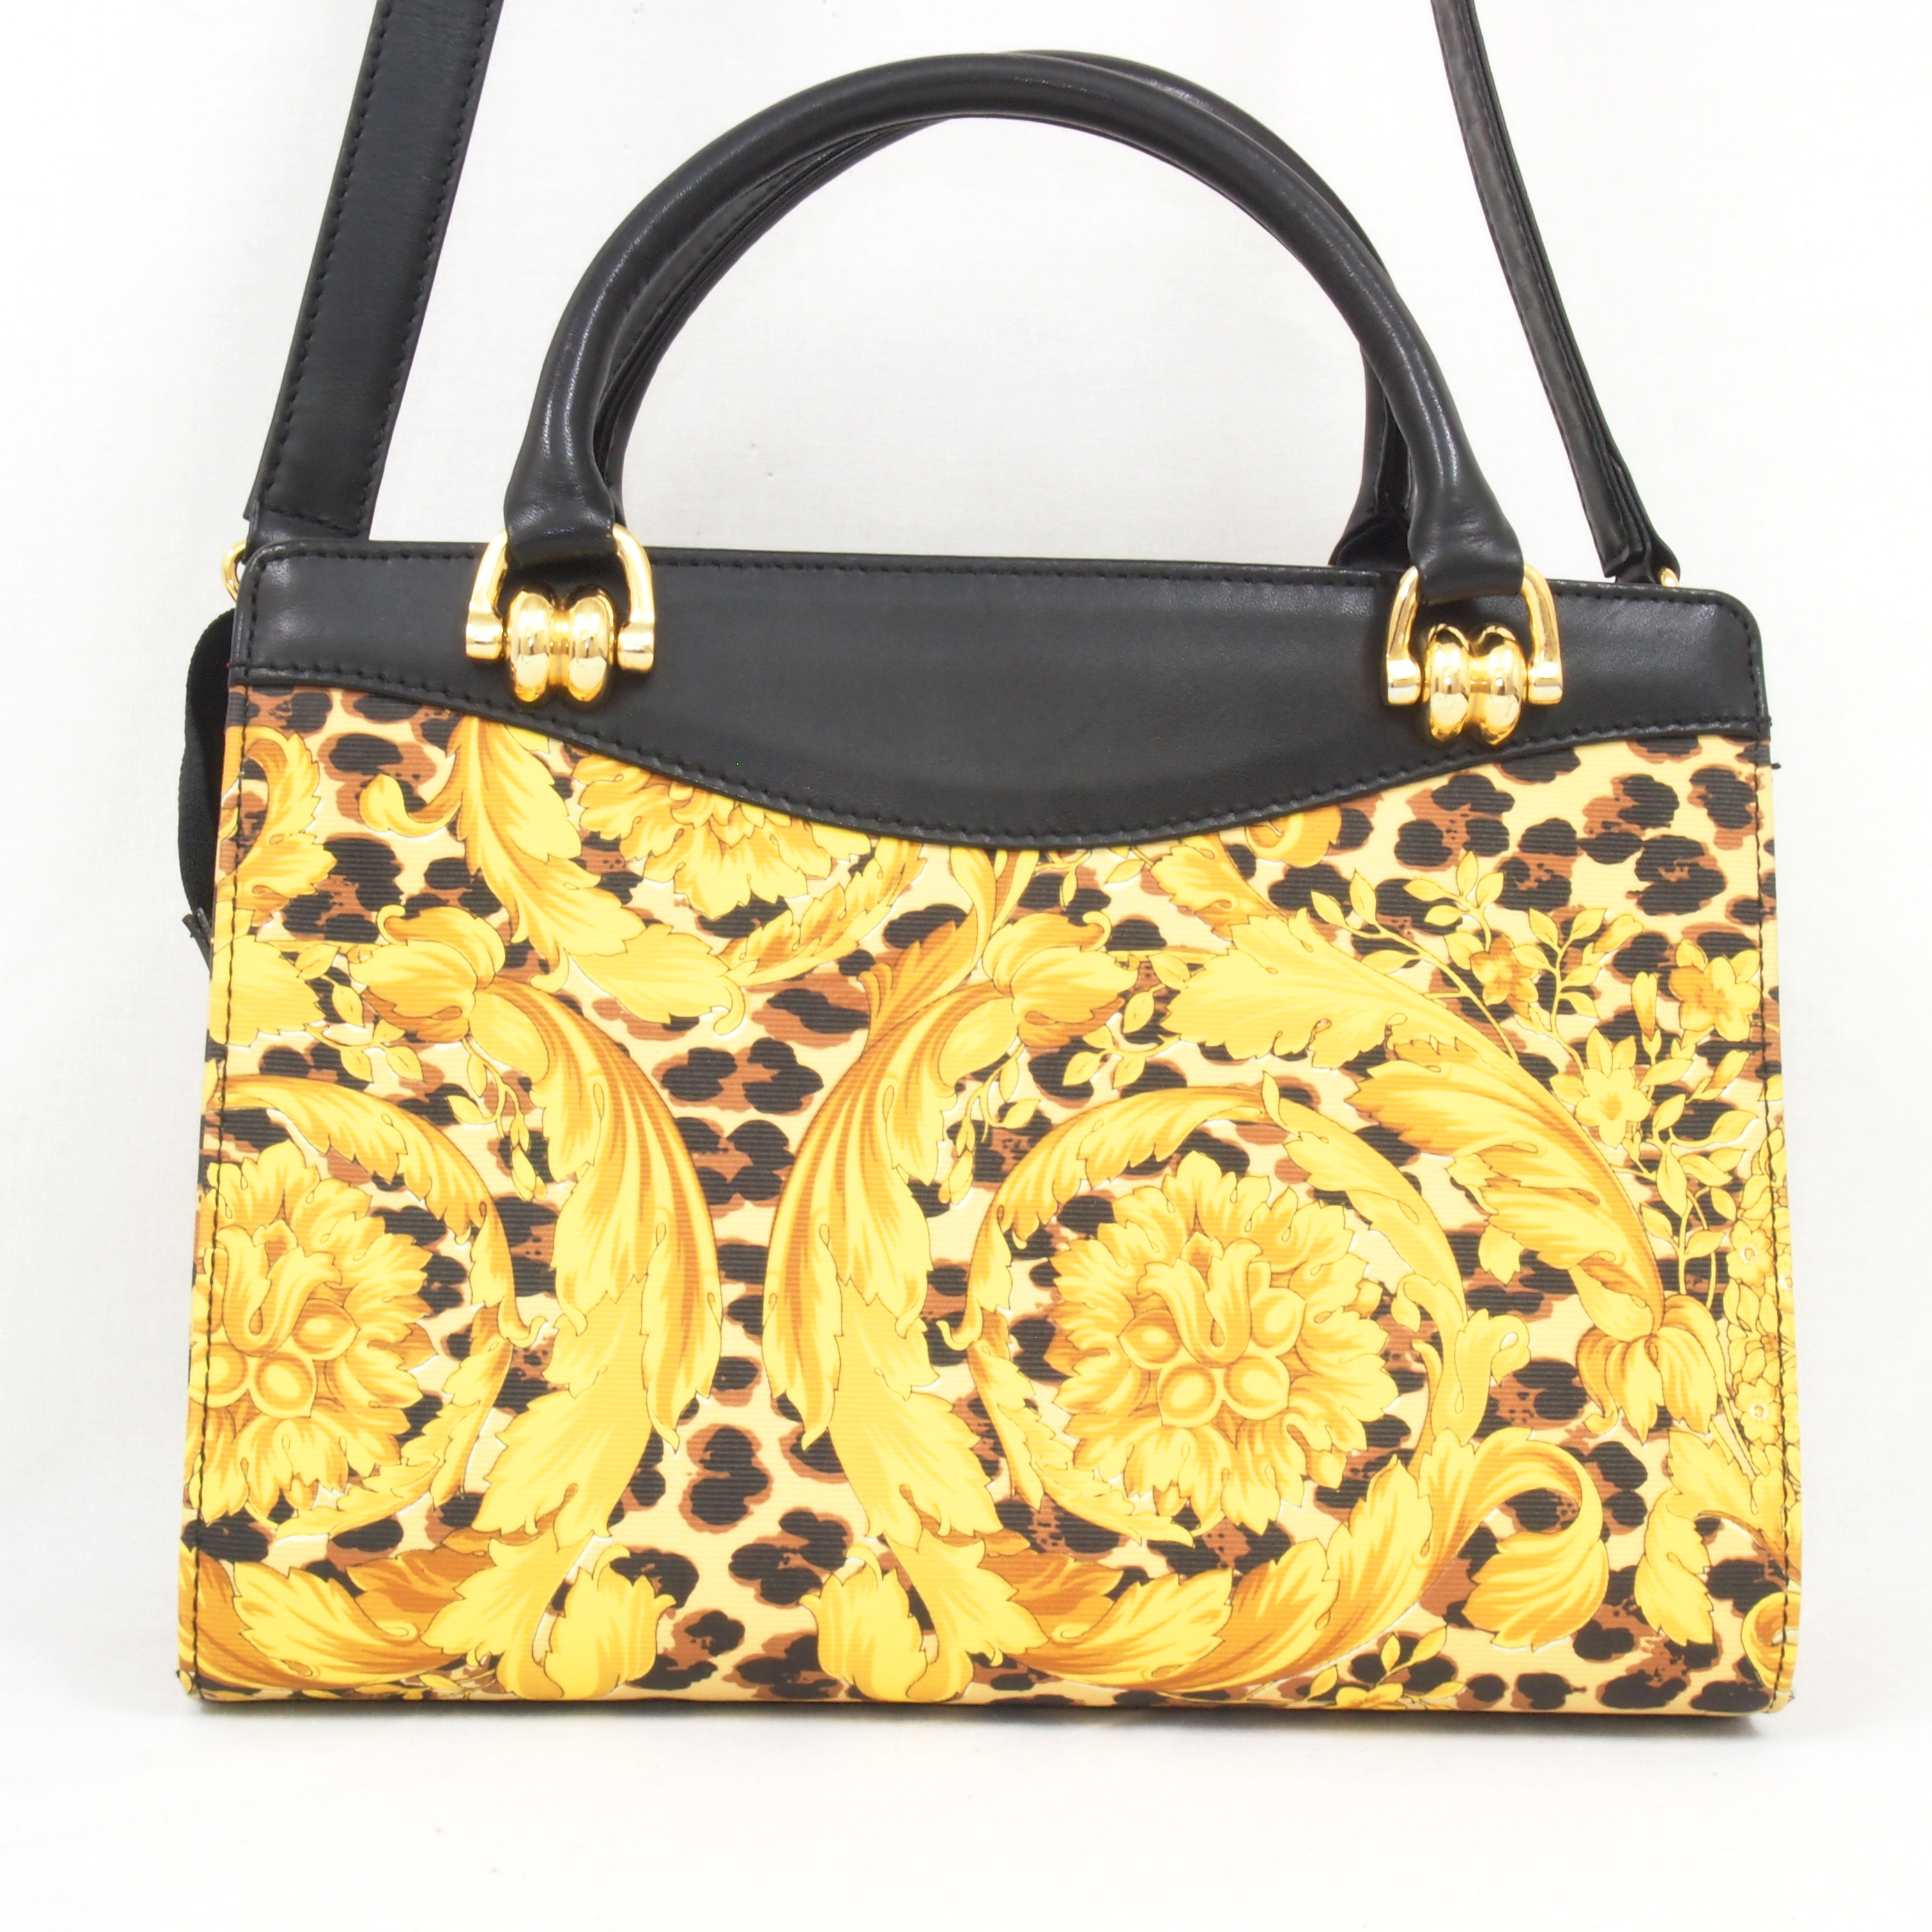 Vintage Gianni Versace Leopard Medusa Handbag with Shoulder Strap ...